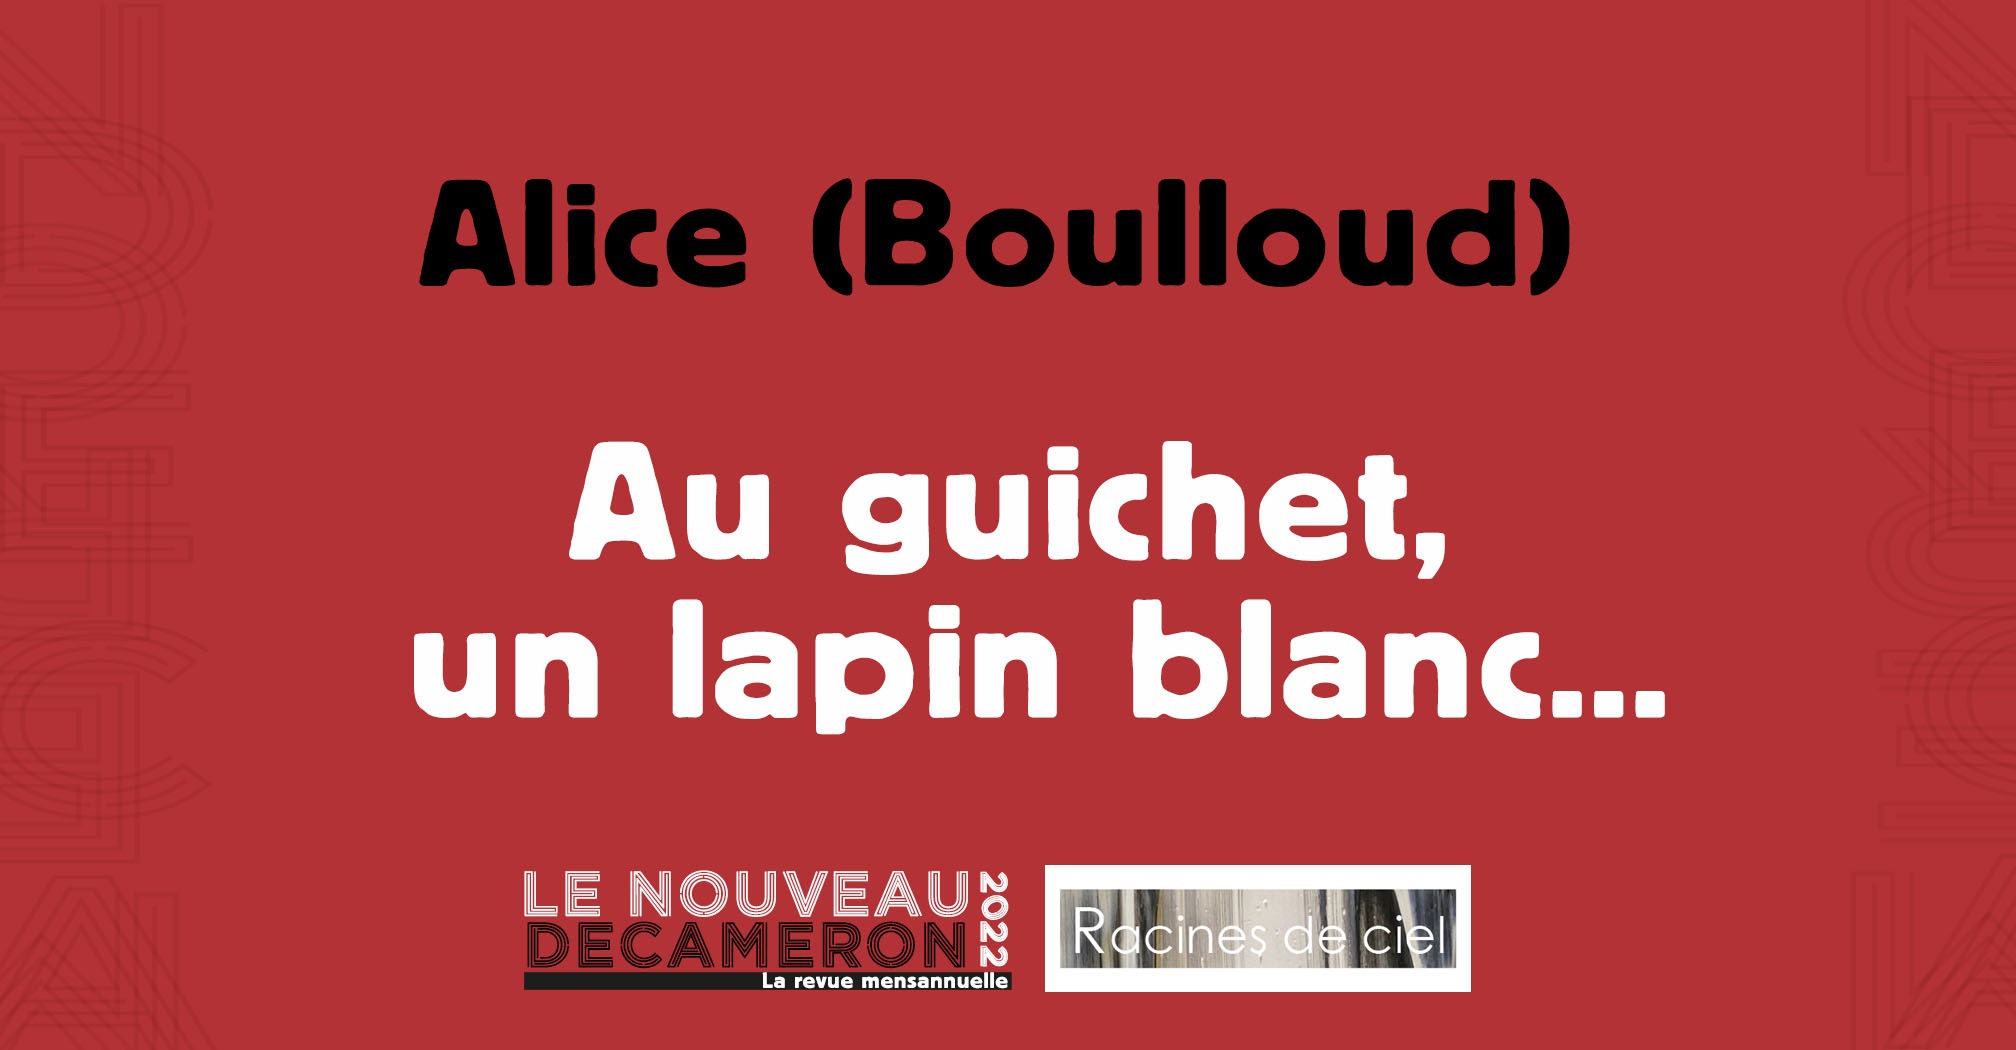 Alice (Boulloud) - Au guichet, un lapin blanc...